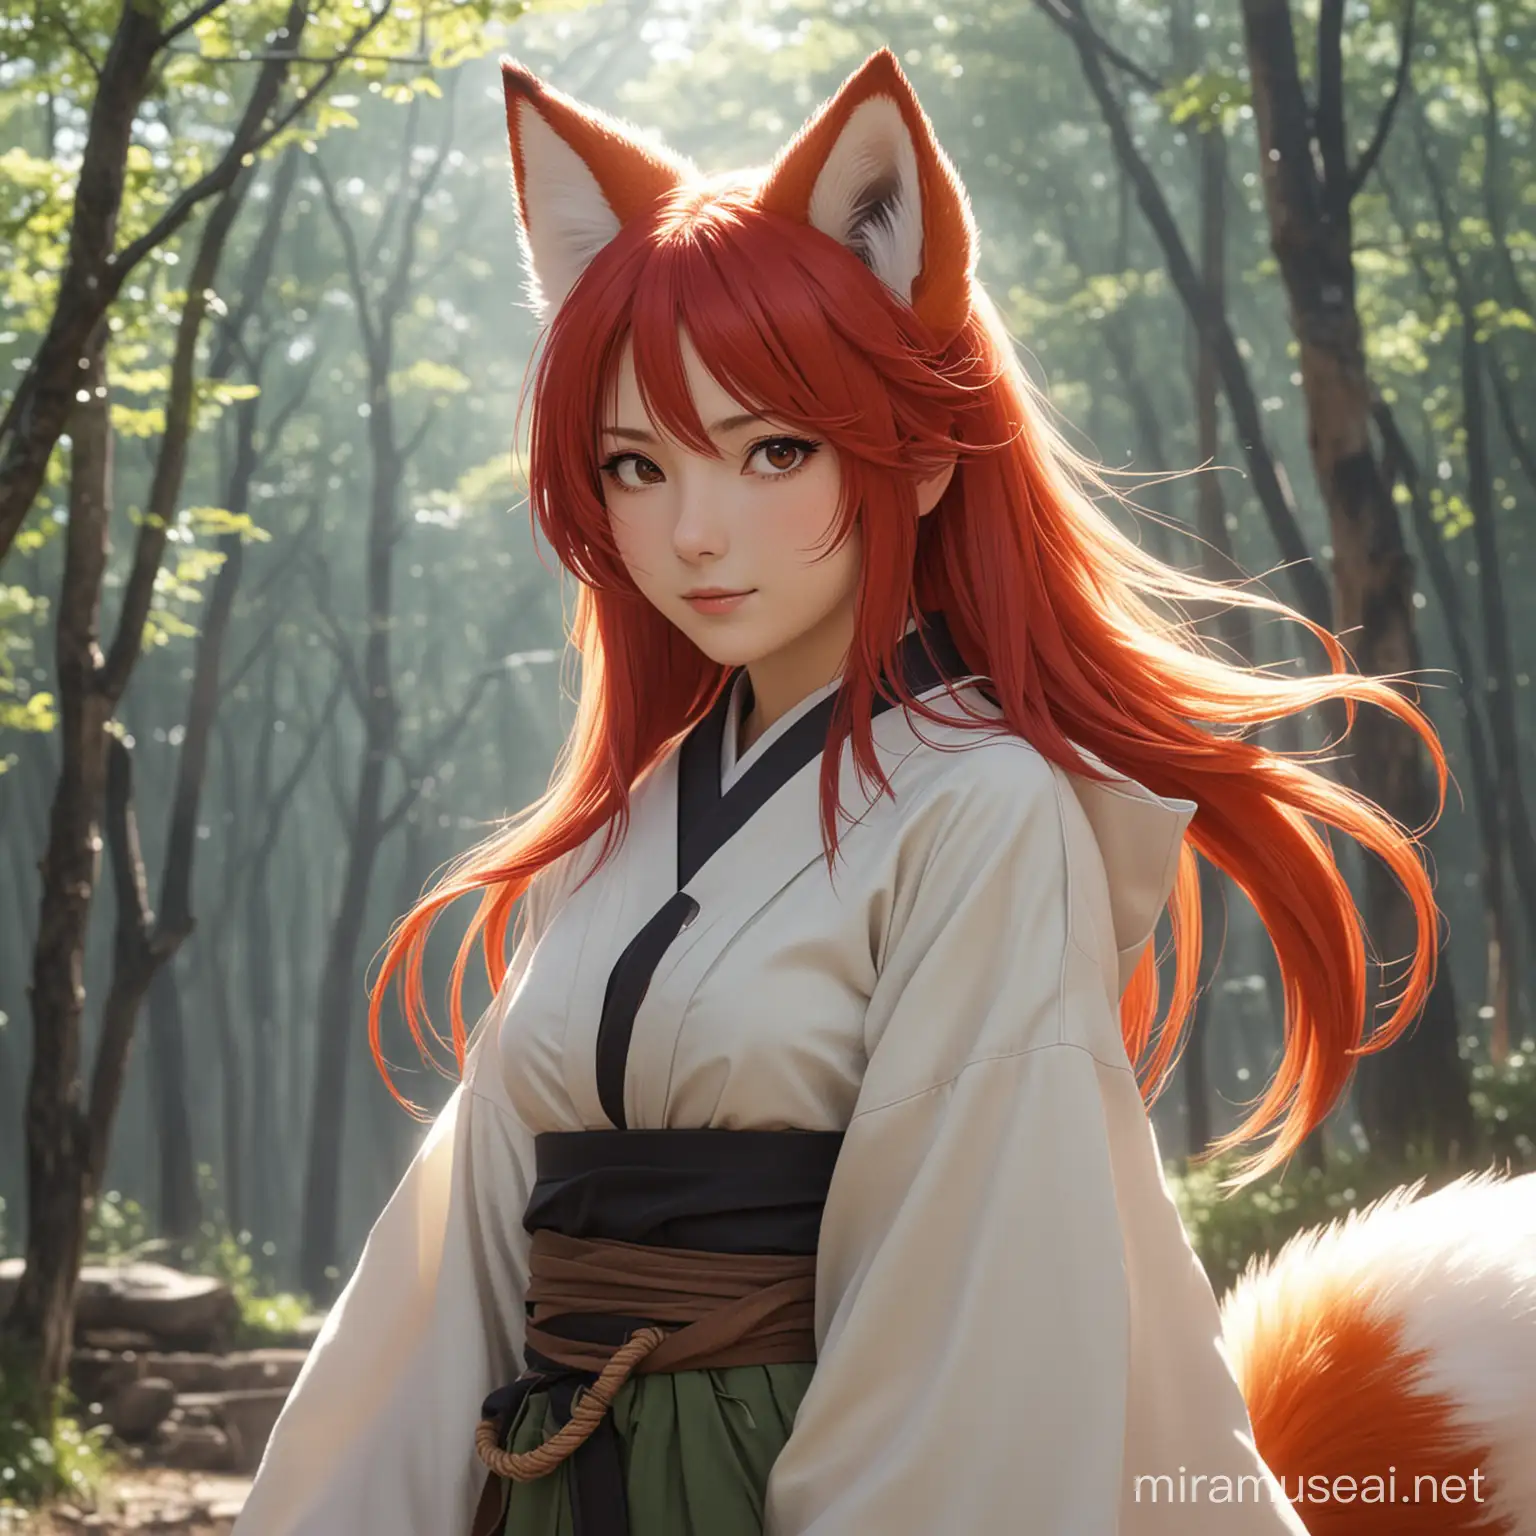 kyuubi, weaering yutake, red hair, fox ear